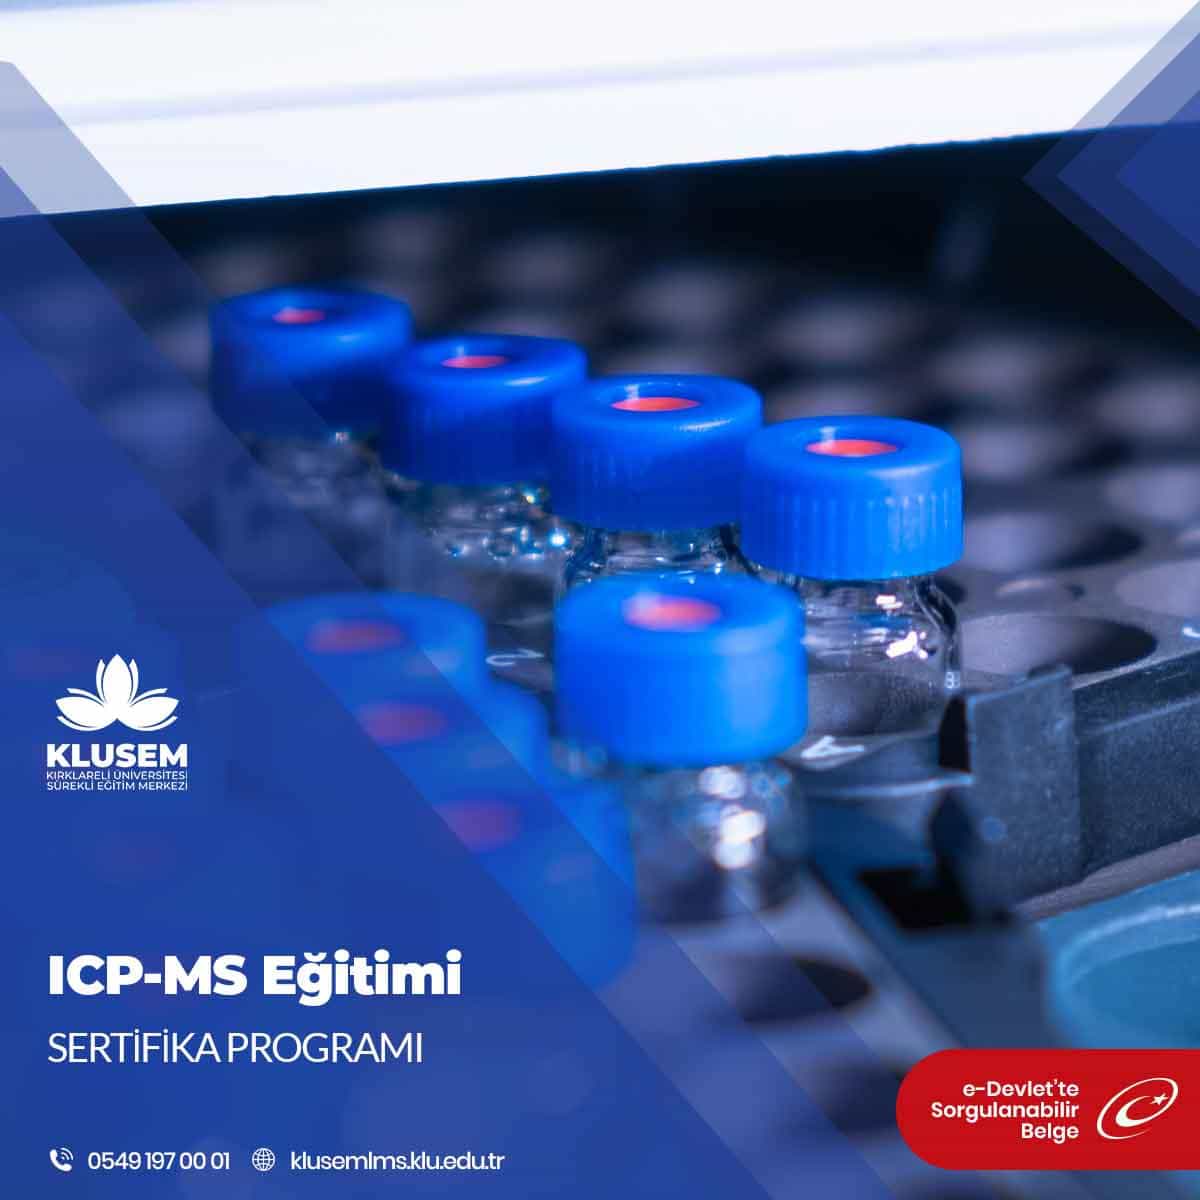 ICP-MS (Inductively Coupled Plasma-Mass Spectrometry), element analizi ve iz element tayini için kullanılan yüksek hassasiyetli bir analitik yöntemdir.